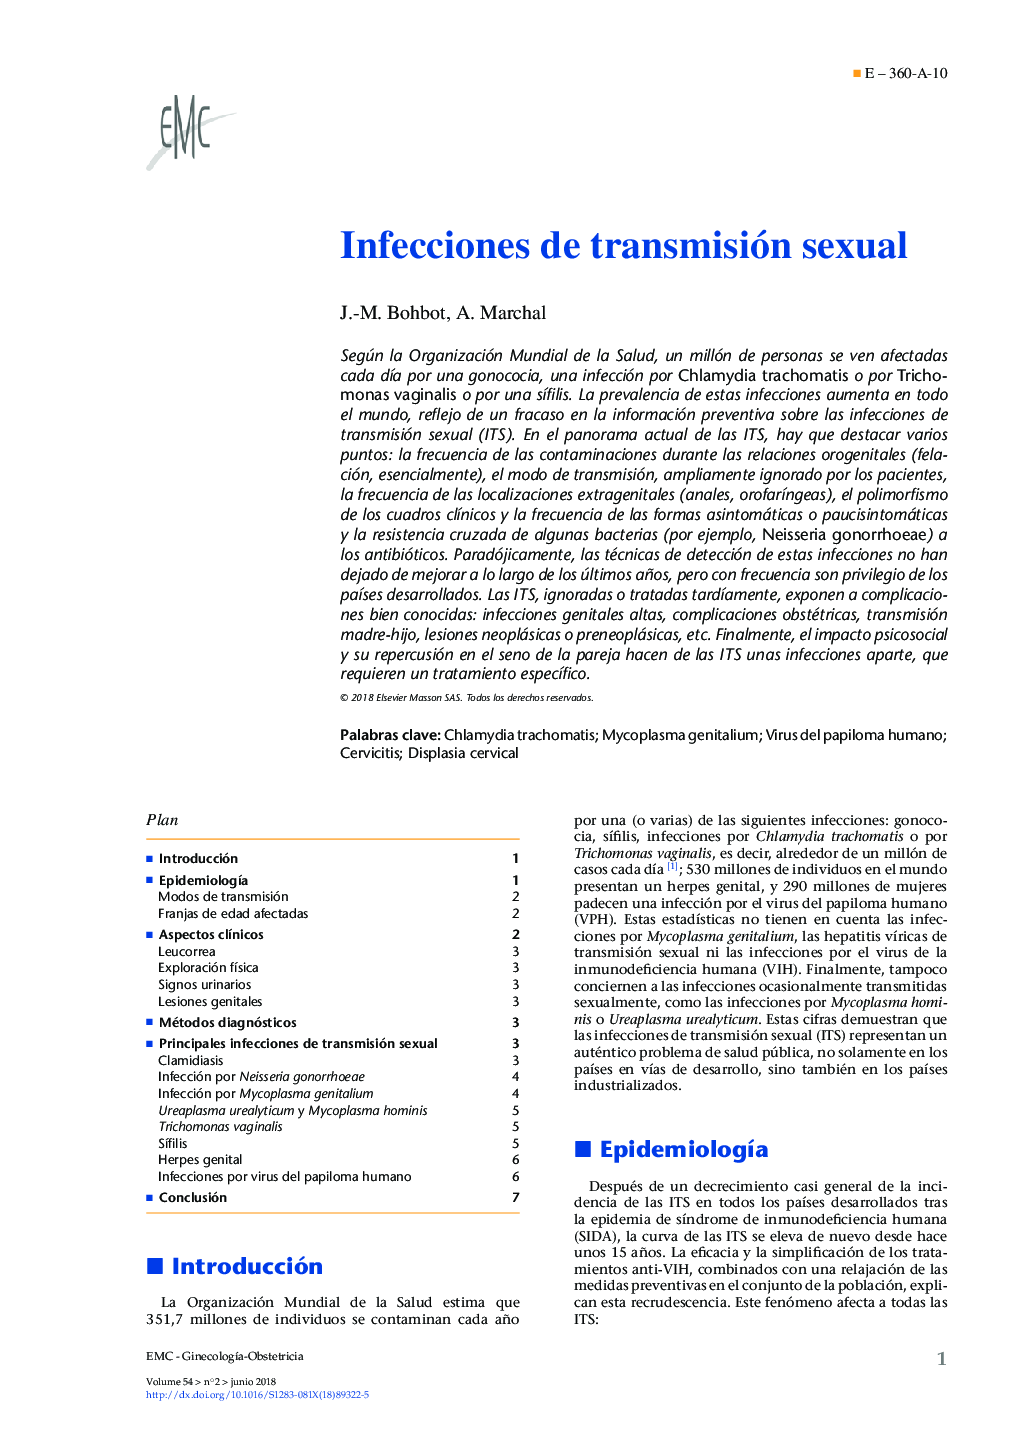 عفونت های منتقله از راه جنسی 